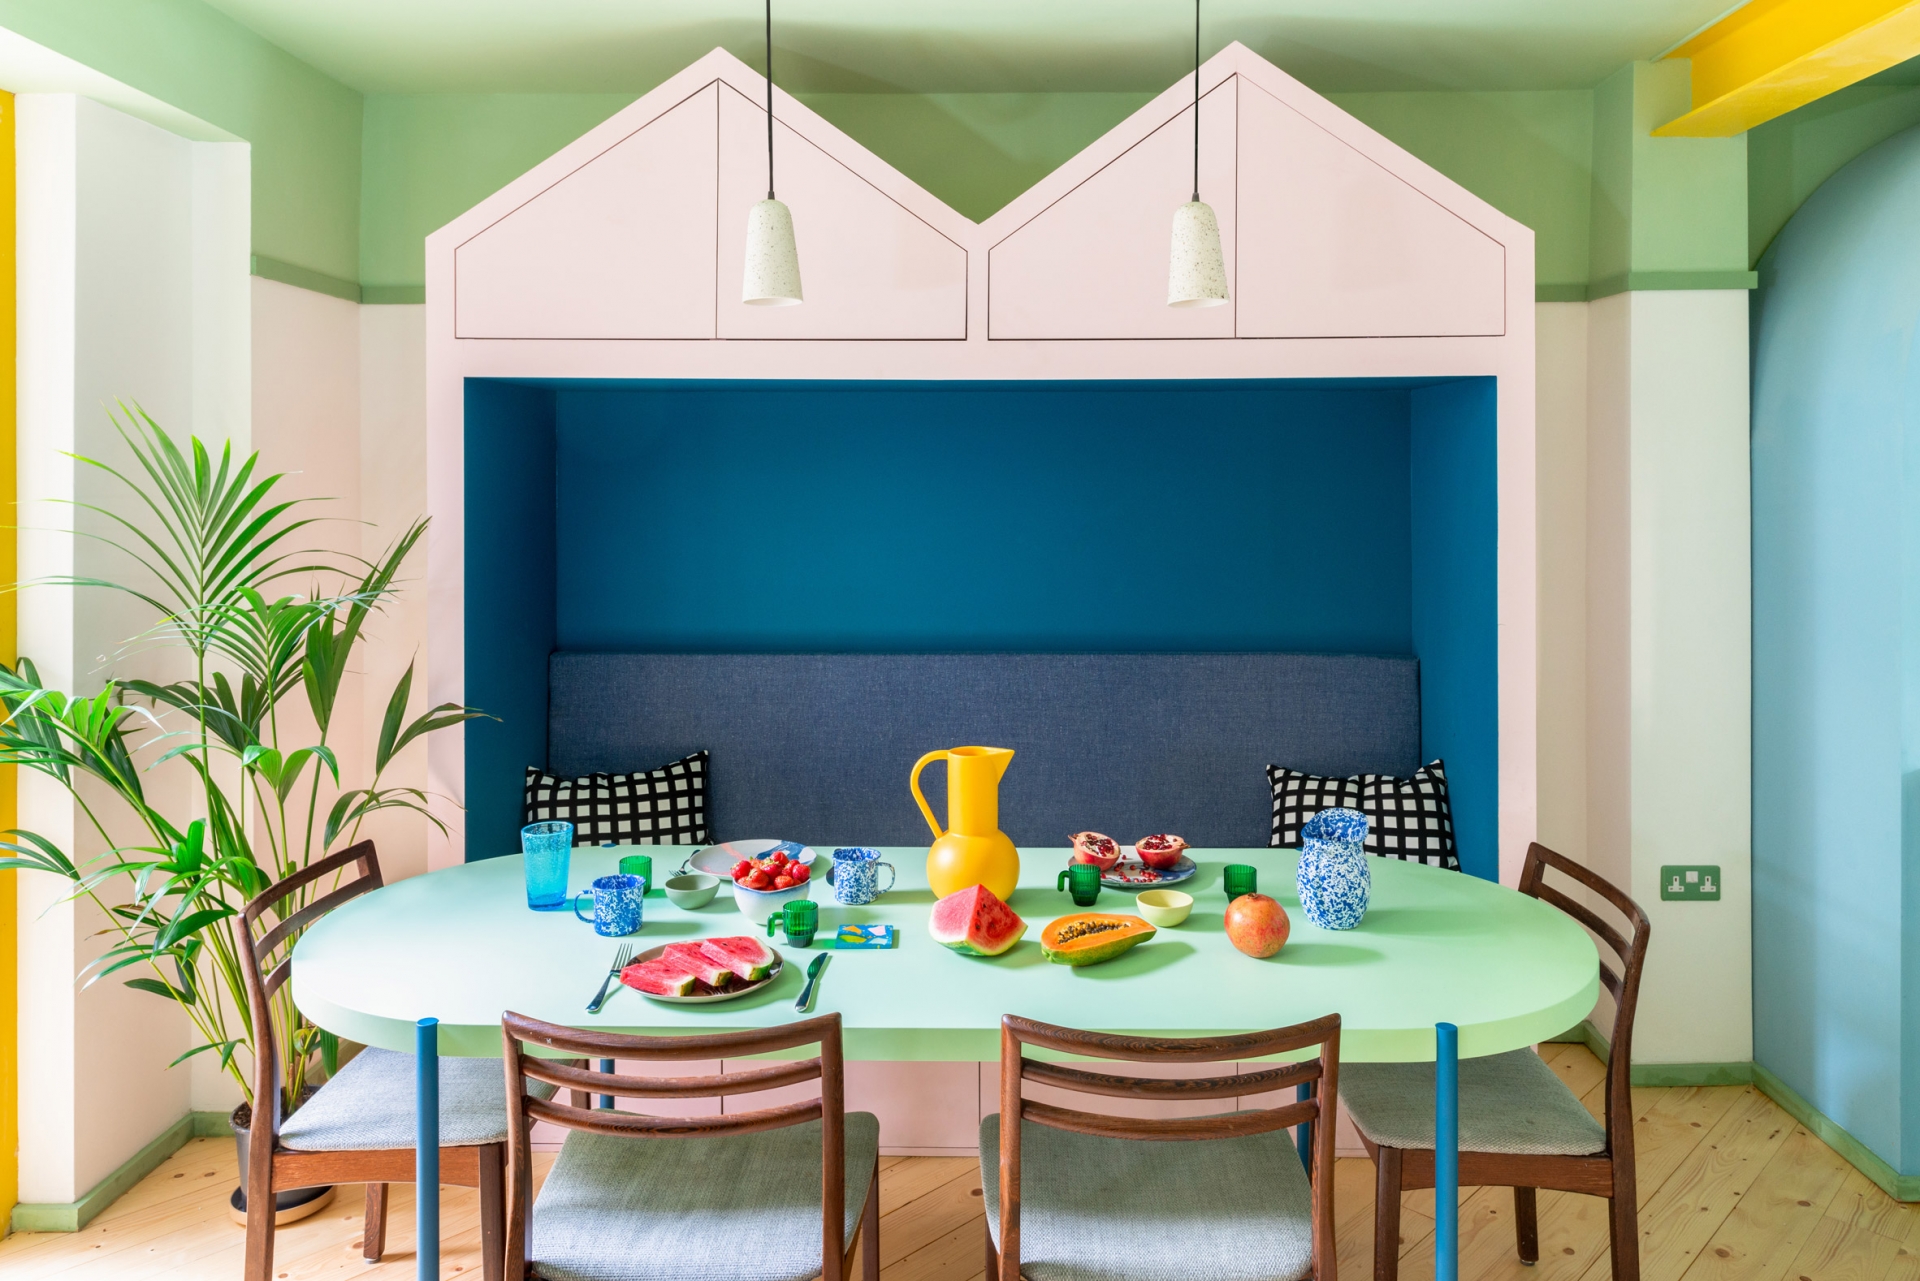 Kế bên phòng bếp là phòng ăn gia đình với thiết kế giống như kiểu dáng của những mái nhà  xinh đẹp. Chiếc bàn màu xanh bạc hà hình oval với những chiếc ghế xếp xung quanh cho cảm giác quây quần đầm ấm.